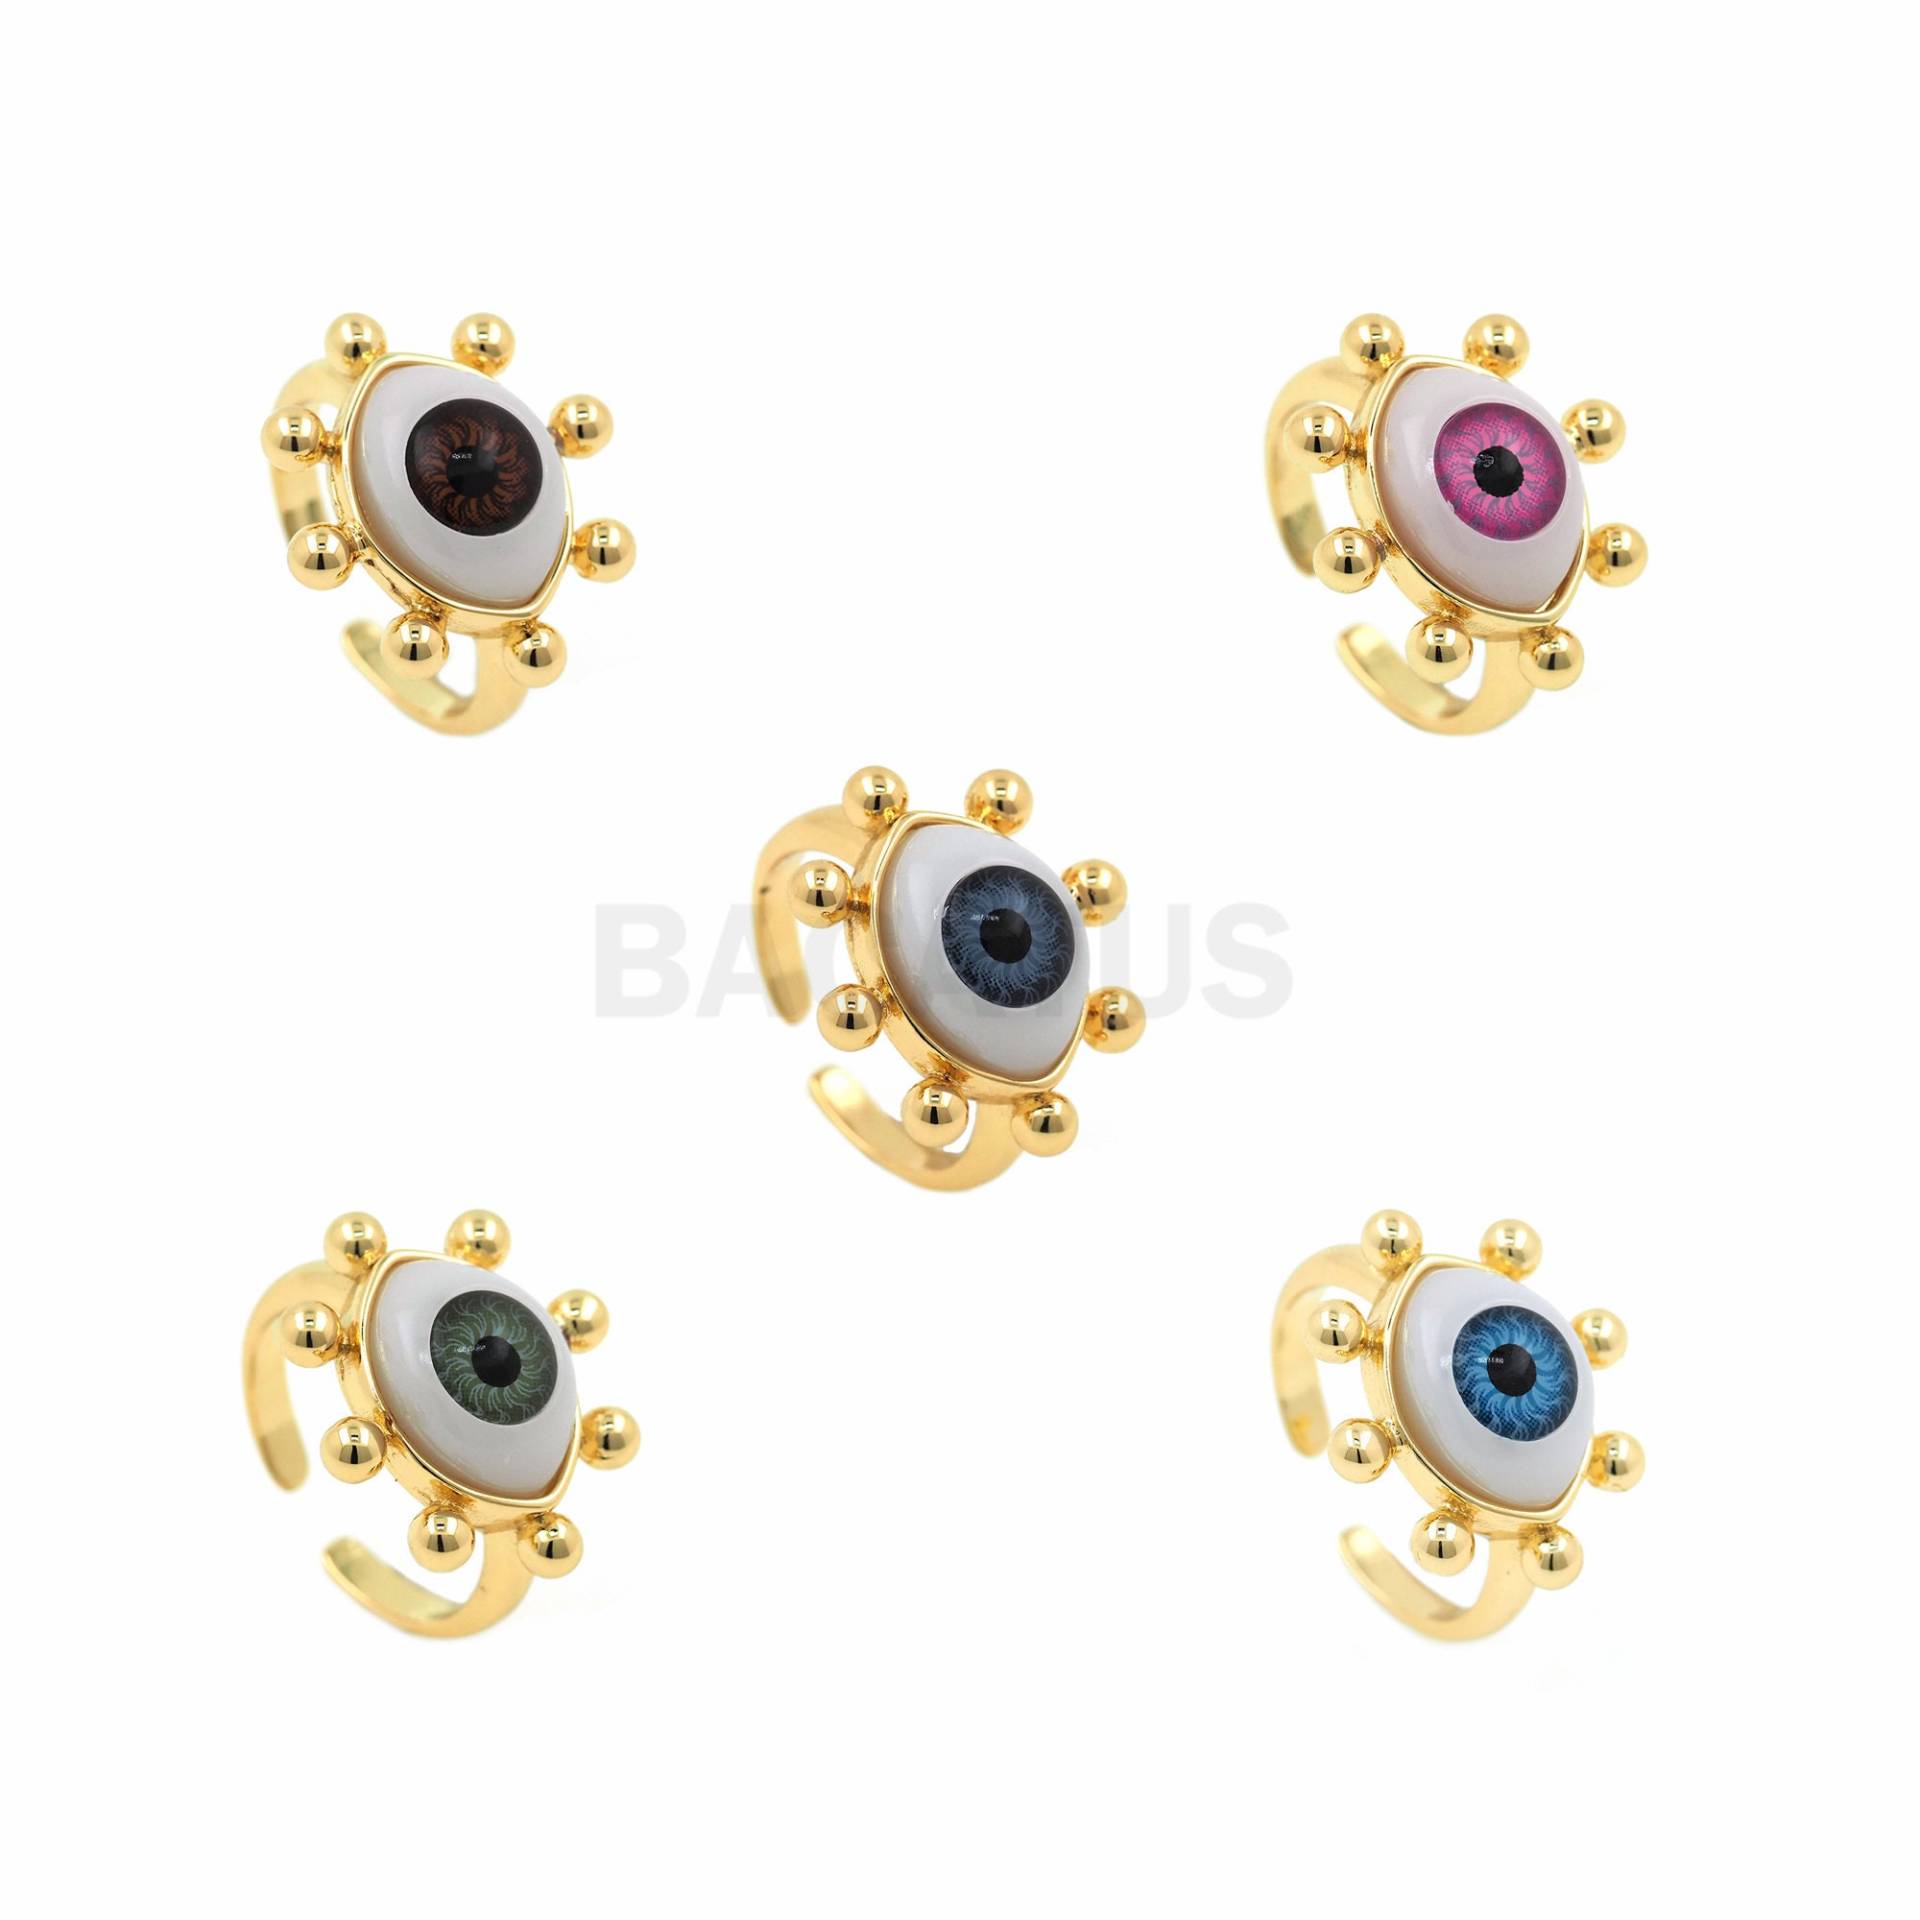 Auge Ring Vergoldet Und Kleiner Exquisiter Gold Augenschutz Positiv Energie Öffnung Verstellbar Schmuck von BACATUSCR